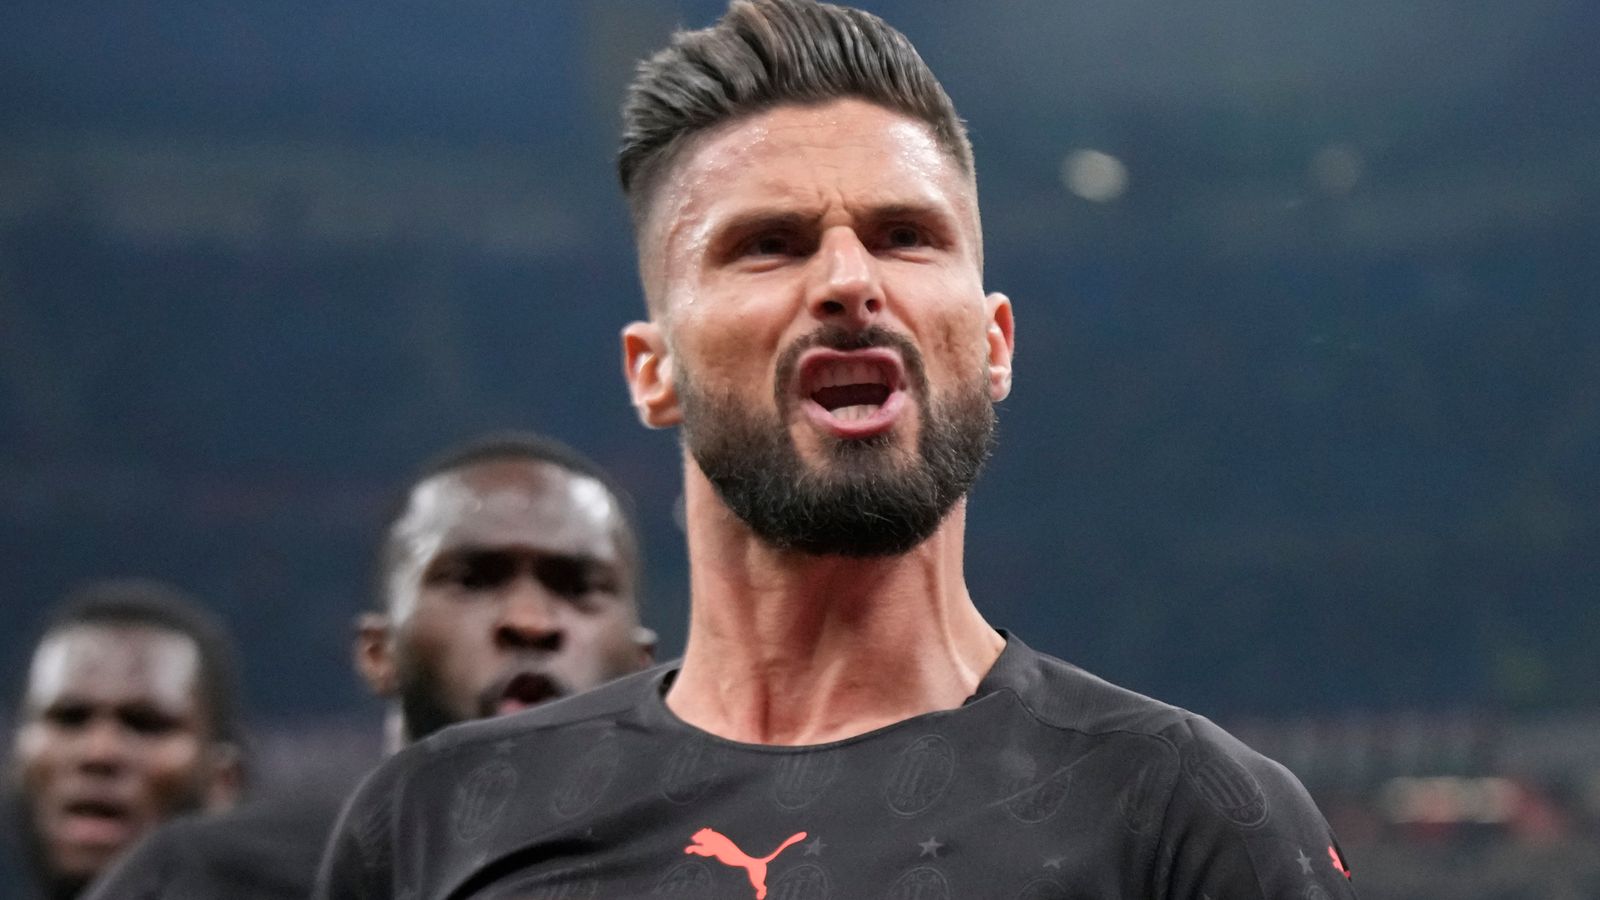 Olivier Giroud giúp AC Milan giành chiến thắng sít sao trước Torino ở Serie A - vòng chung kết châu Âu | Tin tức bóng đá | Bầu trời thể thao